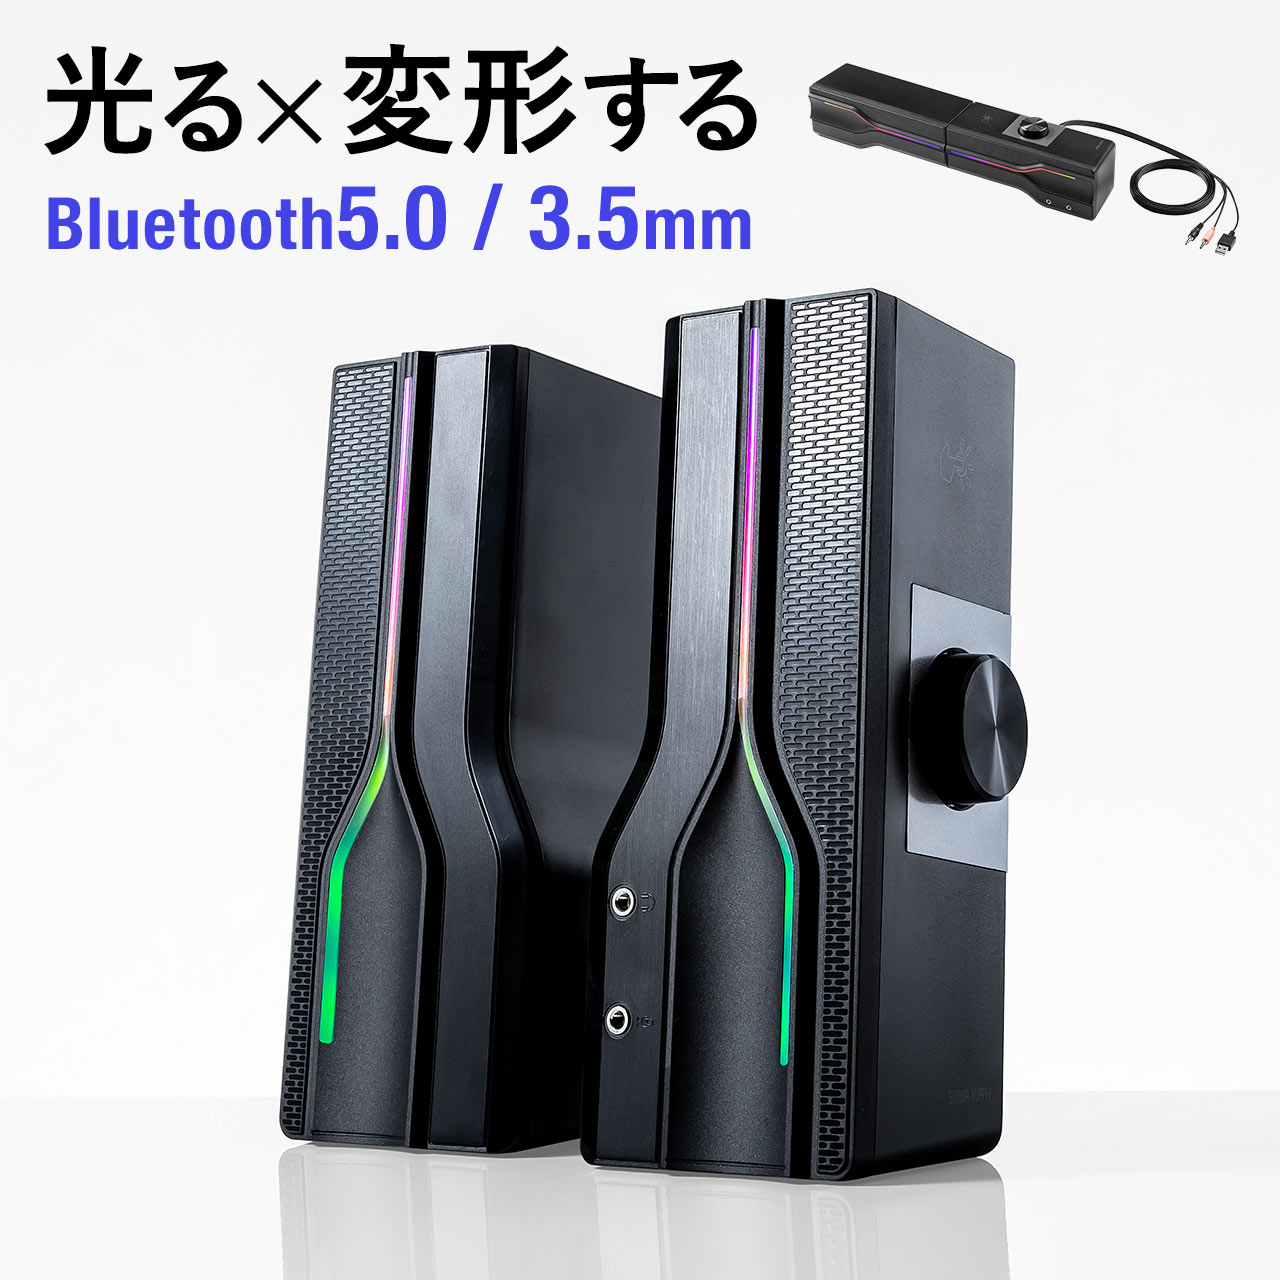 スピーカー Bluetooth PCスピーカー 有線 サウンドバー 2WAY 3.5mm